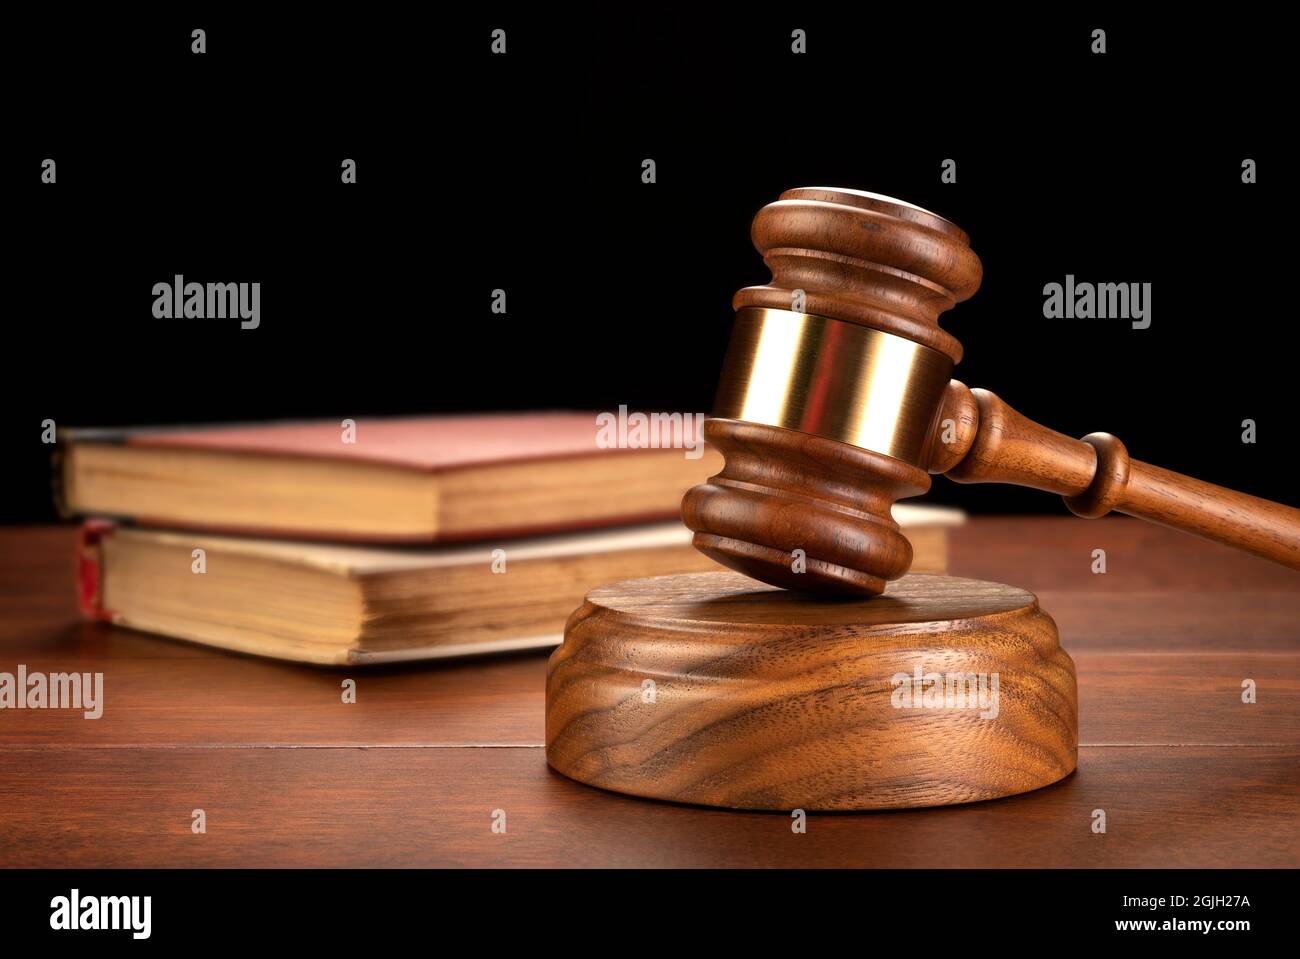 Un gavel est assis devant un livre de droit pour en déduire la recherche est nécessaire pour une défense et pour construire un cas. Banque D'Images